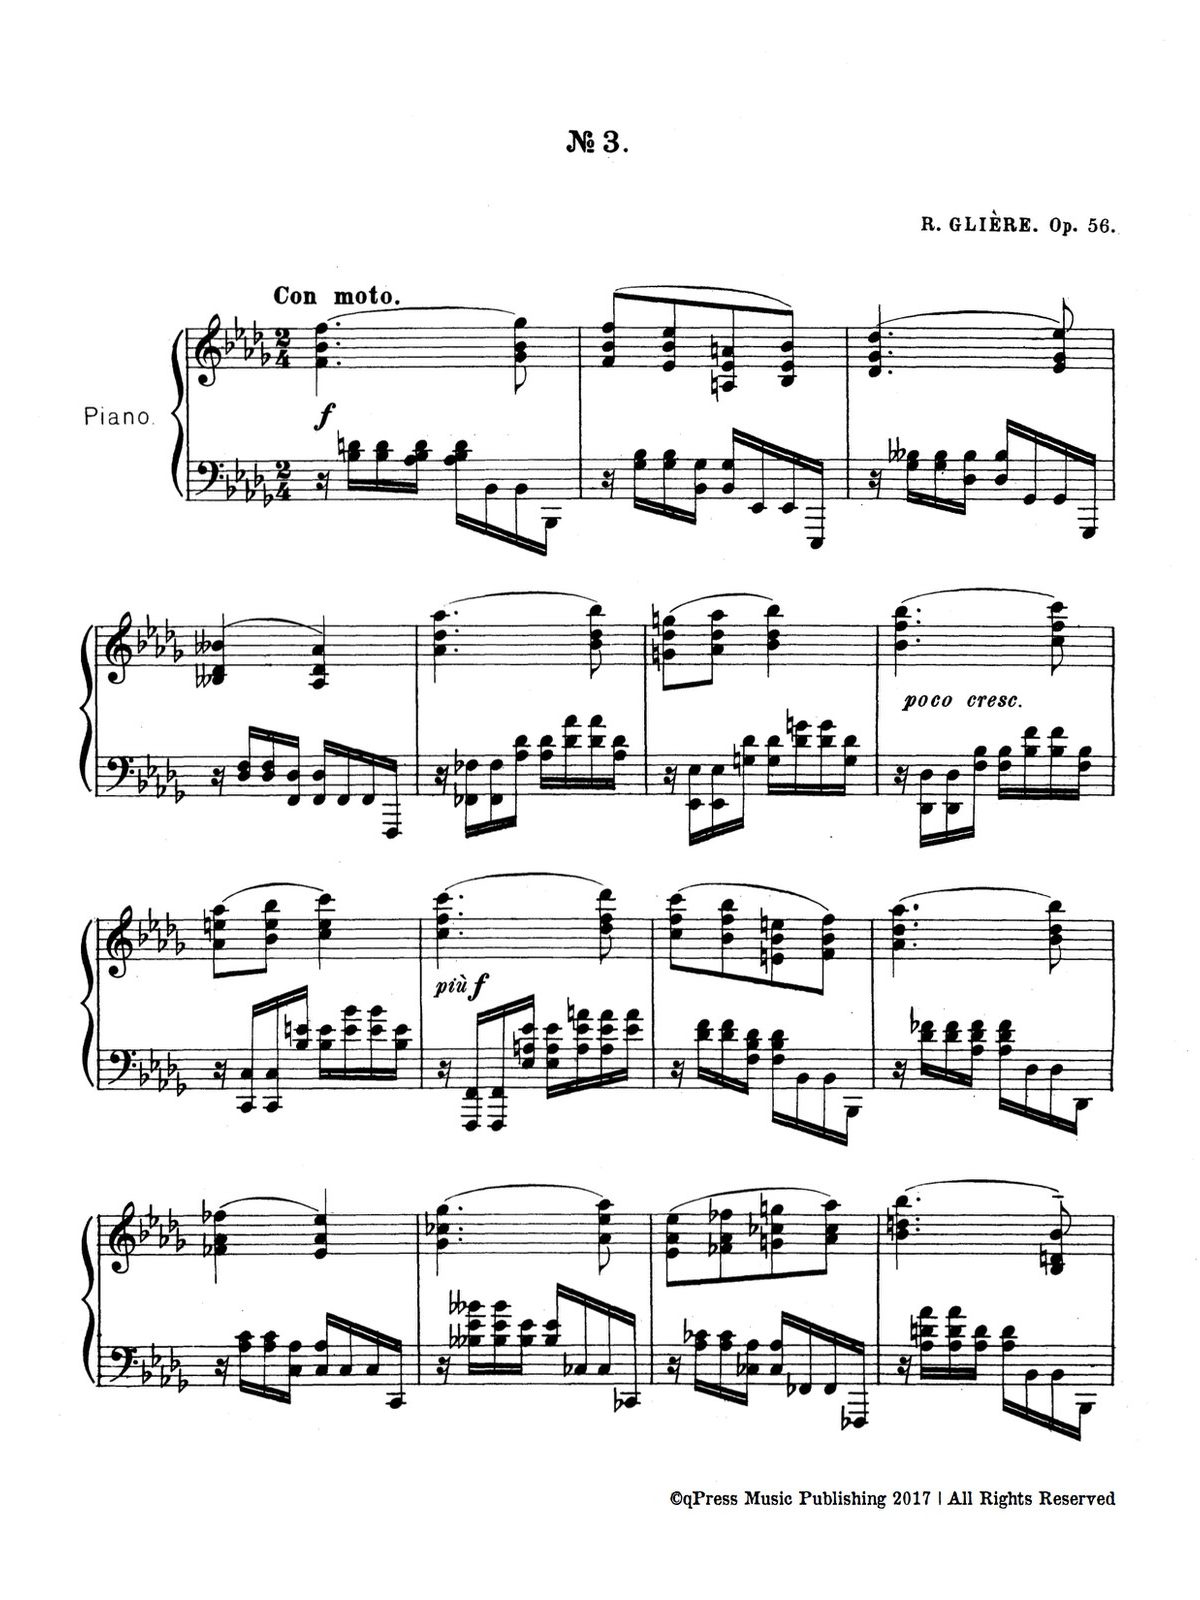 Gliere, 3 Esquisses, Op.56-p07